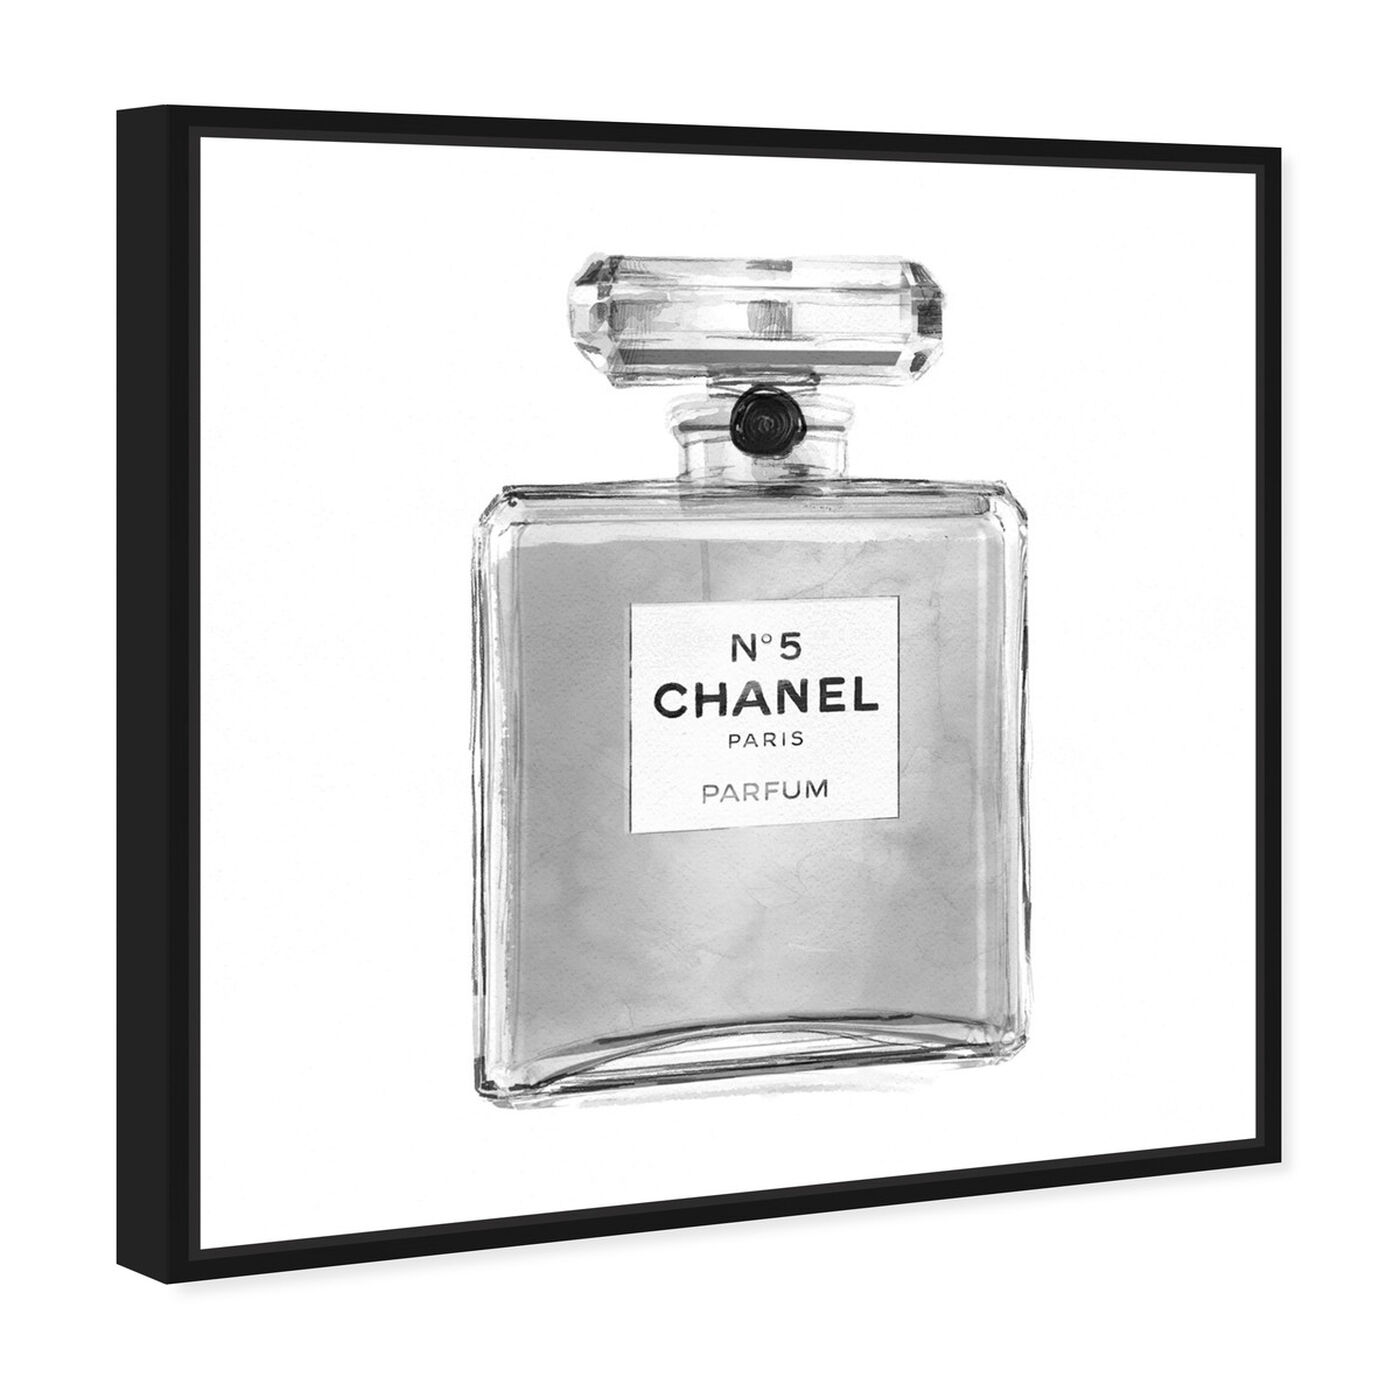 Chanel No. 5 Painting  Perfume, Classic perfumes, Chanel perfume